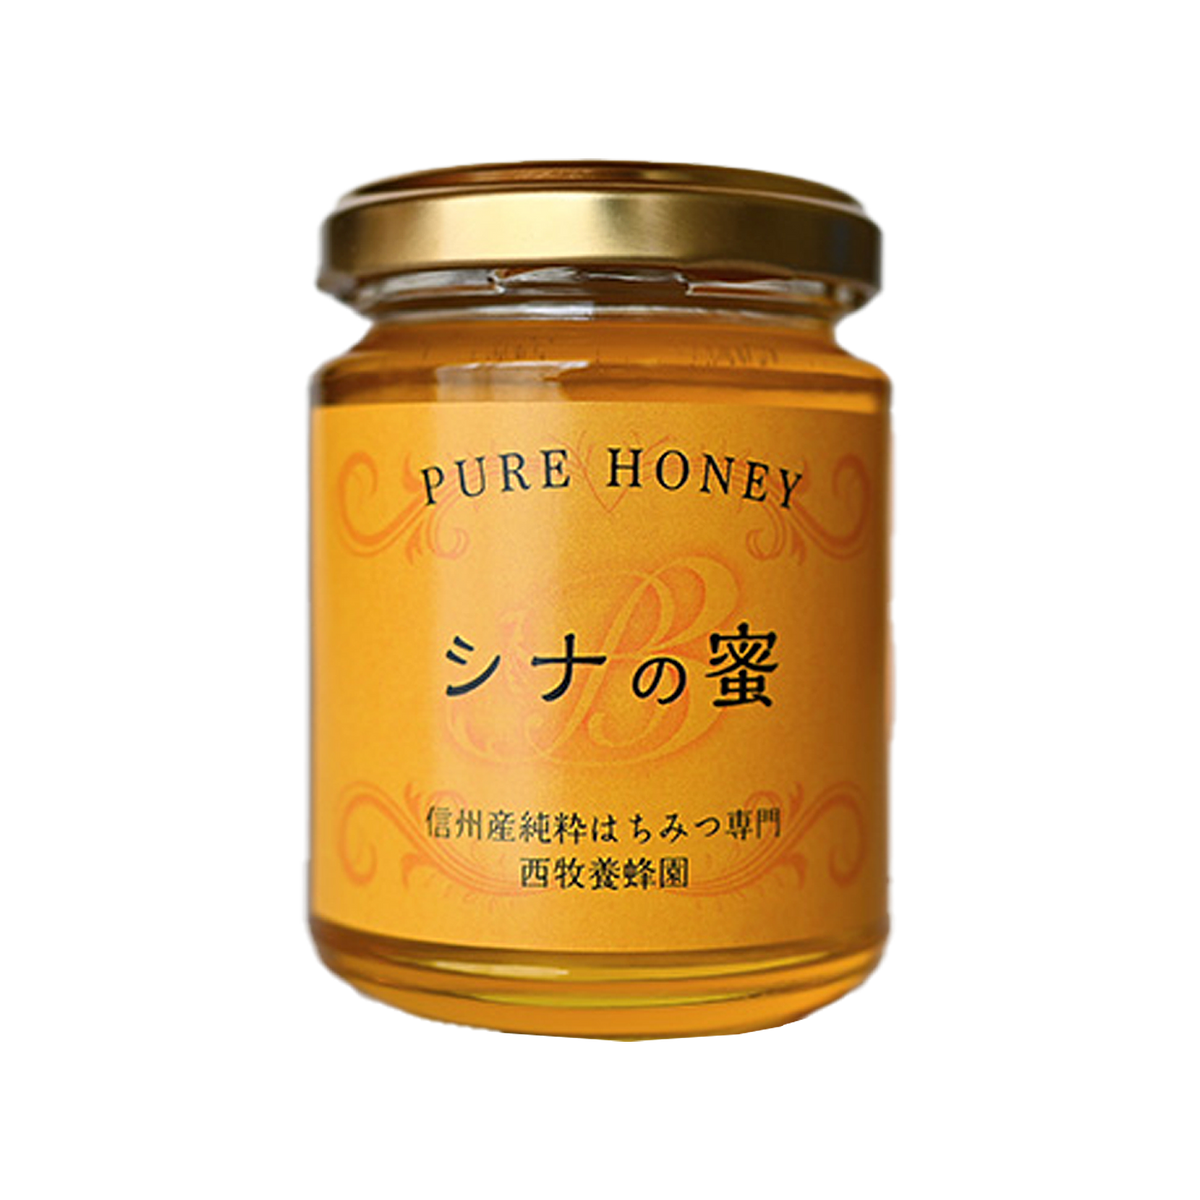 生蜂蜜 天然 はちみつ シナ 菩提樹 国産 (170g) ホライズンファームズ